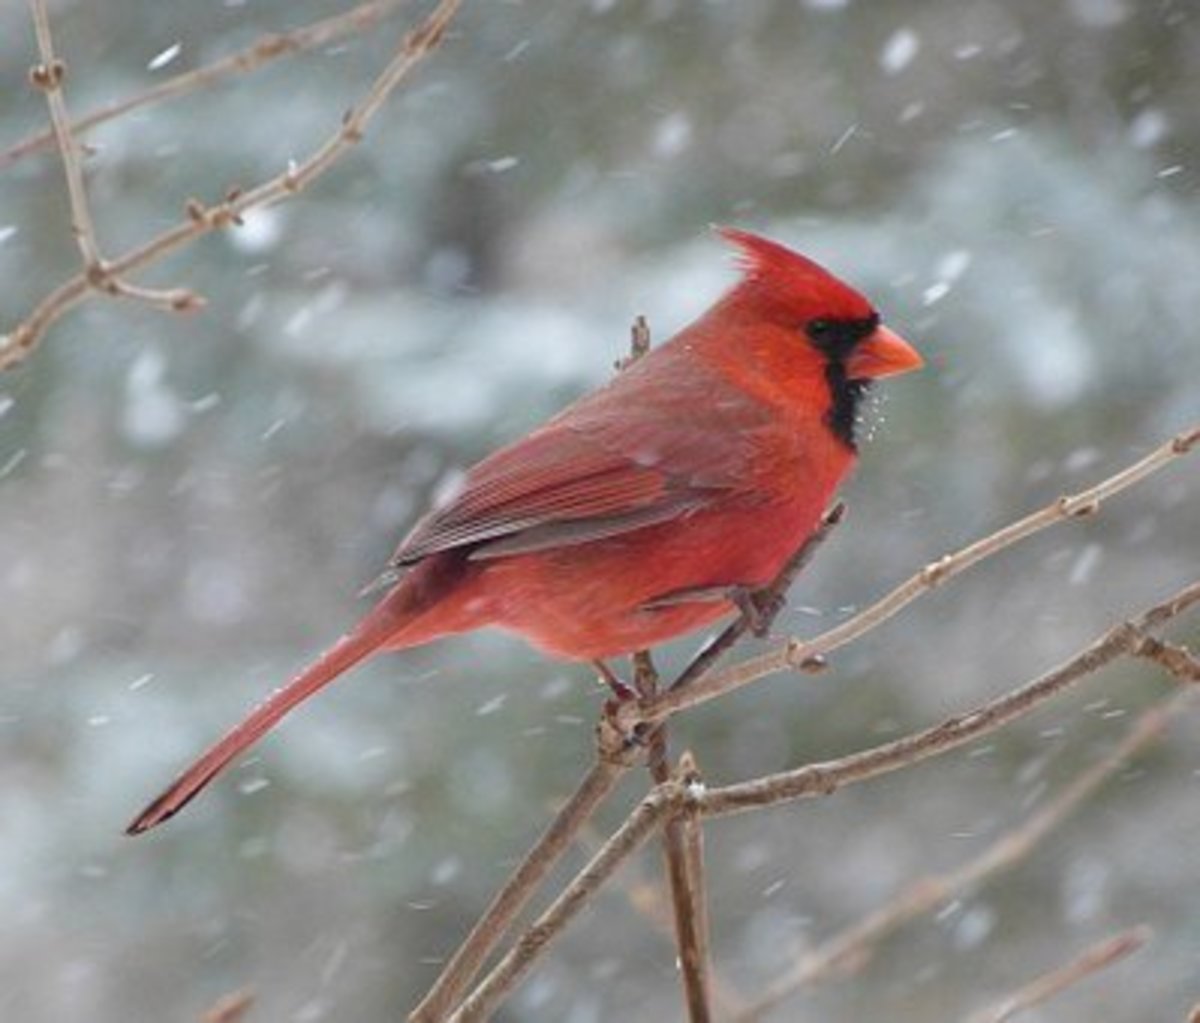 Male Cardinal in winter